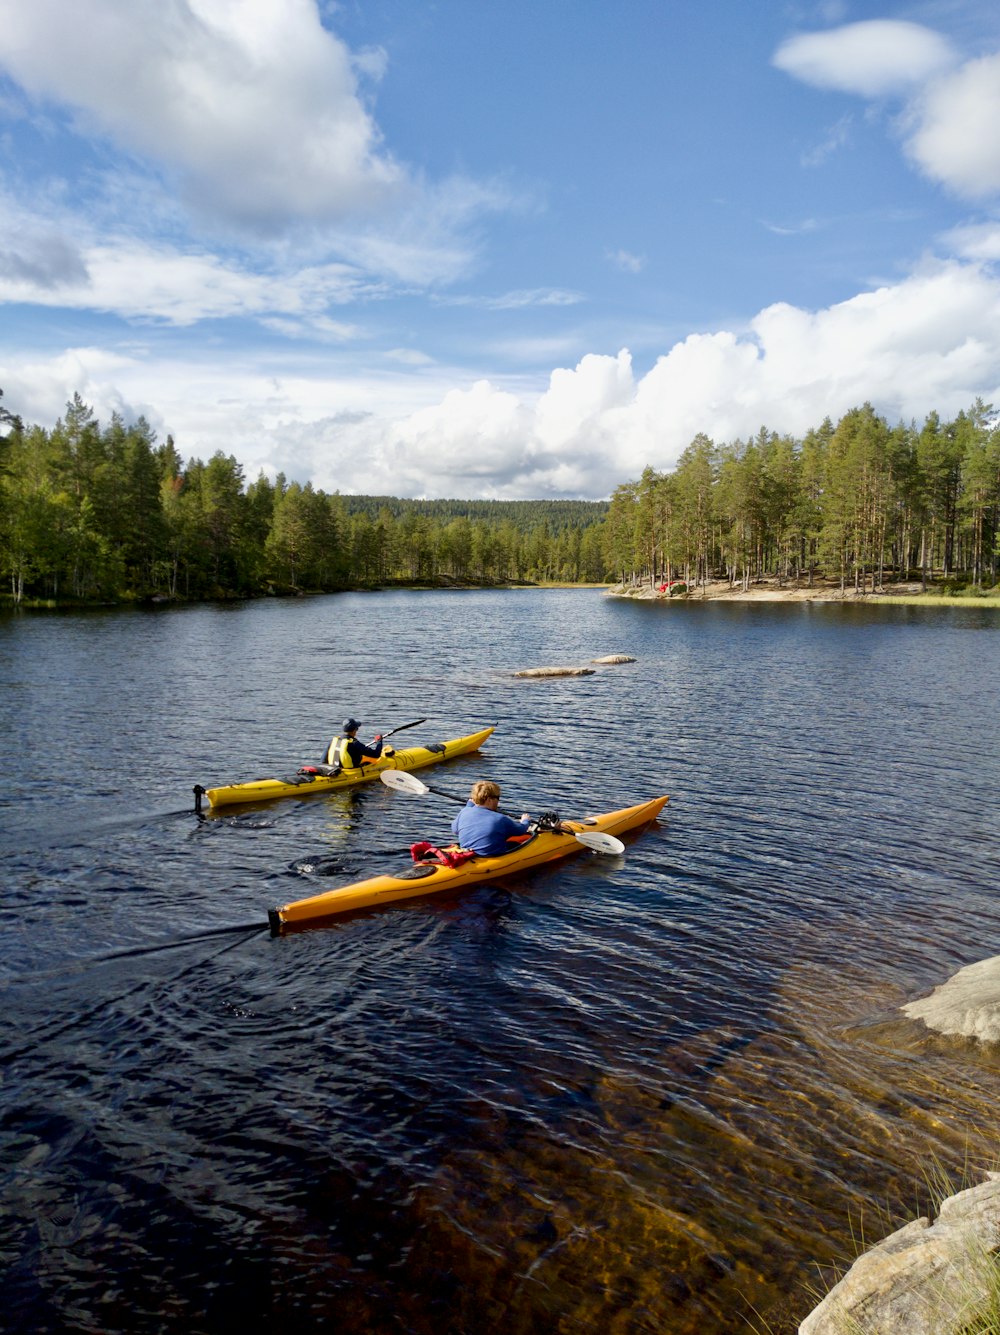 kayak giallo sullo specchio d'acqua vicino agli alberi verdi sotto il cielo nuvoloso blu e bianco durante